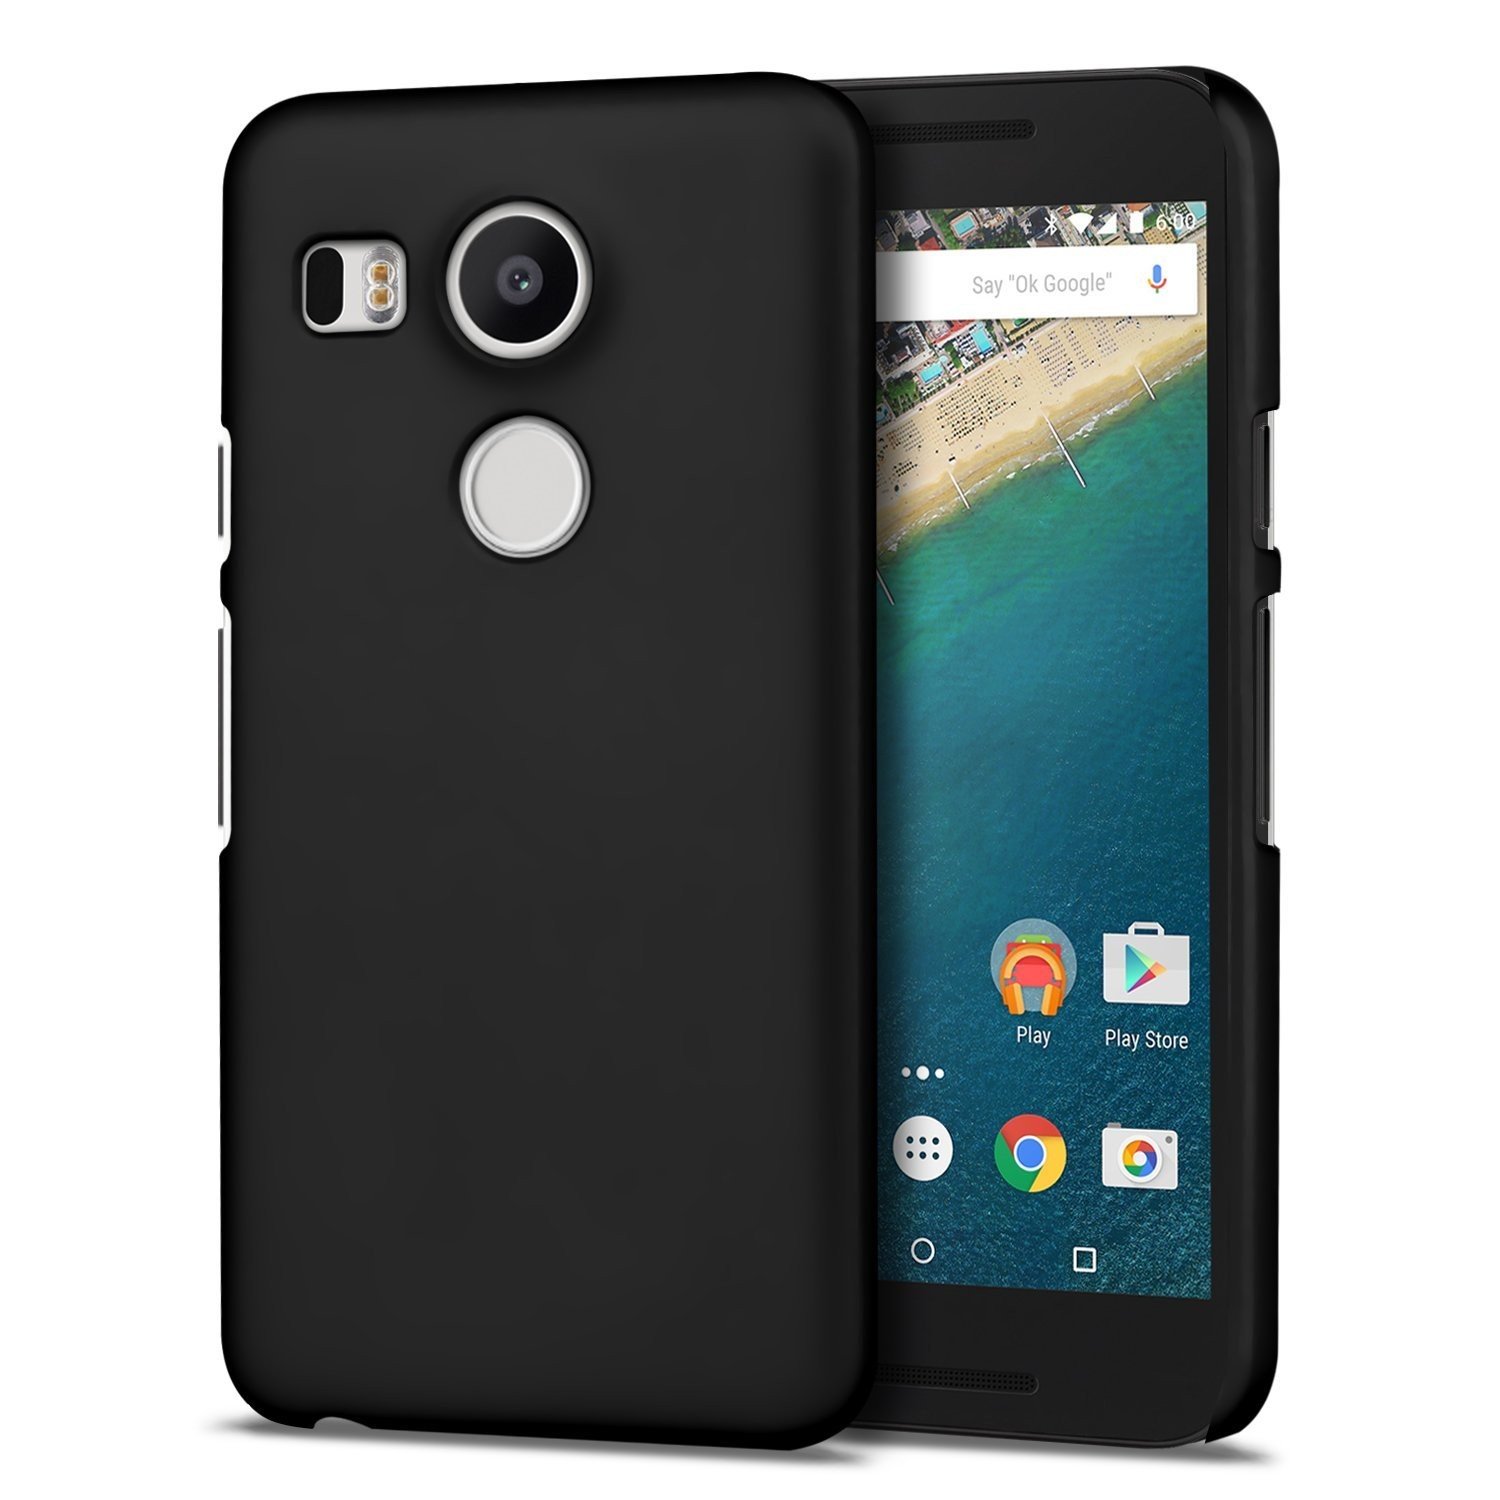 Hoesje LG Nexus 5X hard case zwart